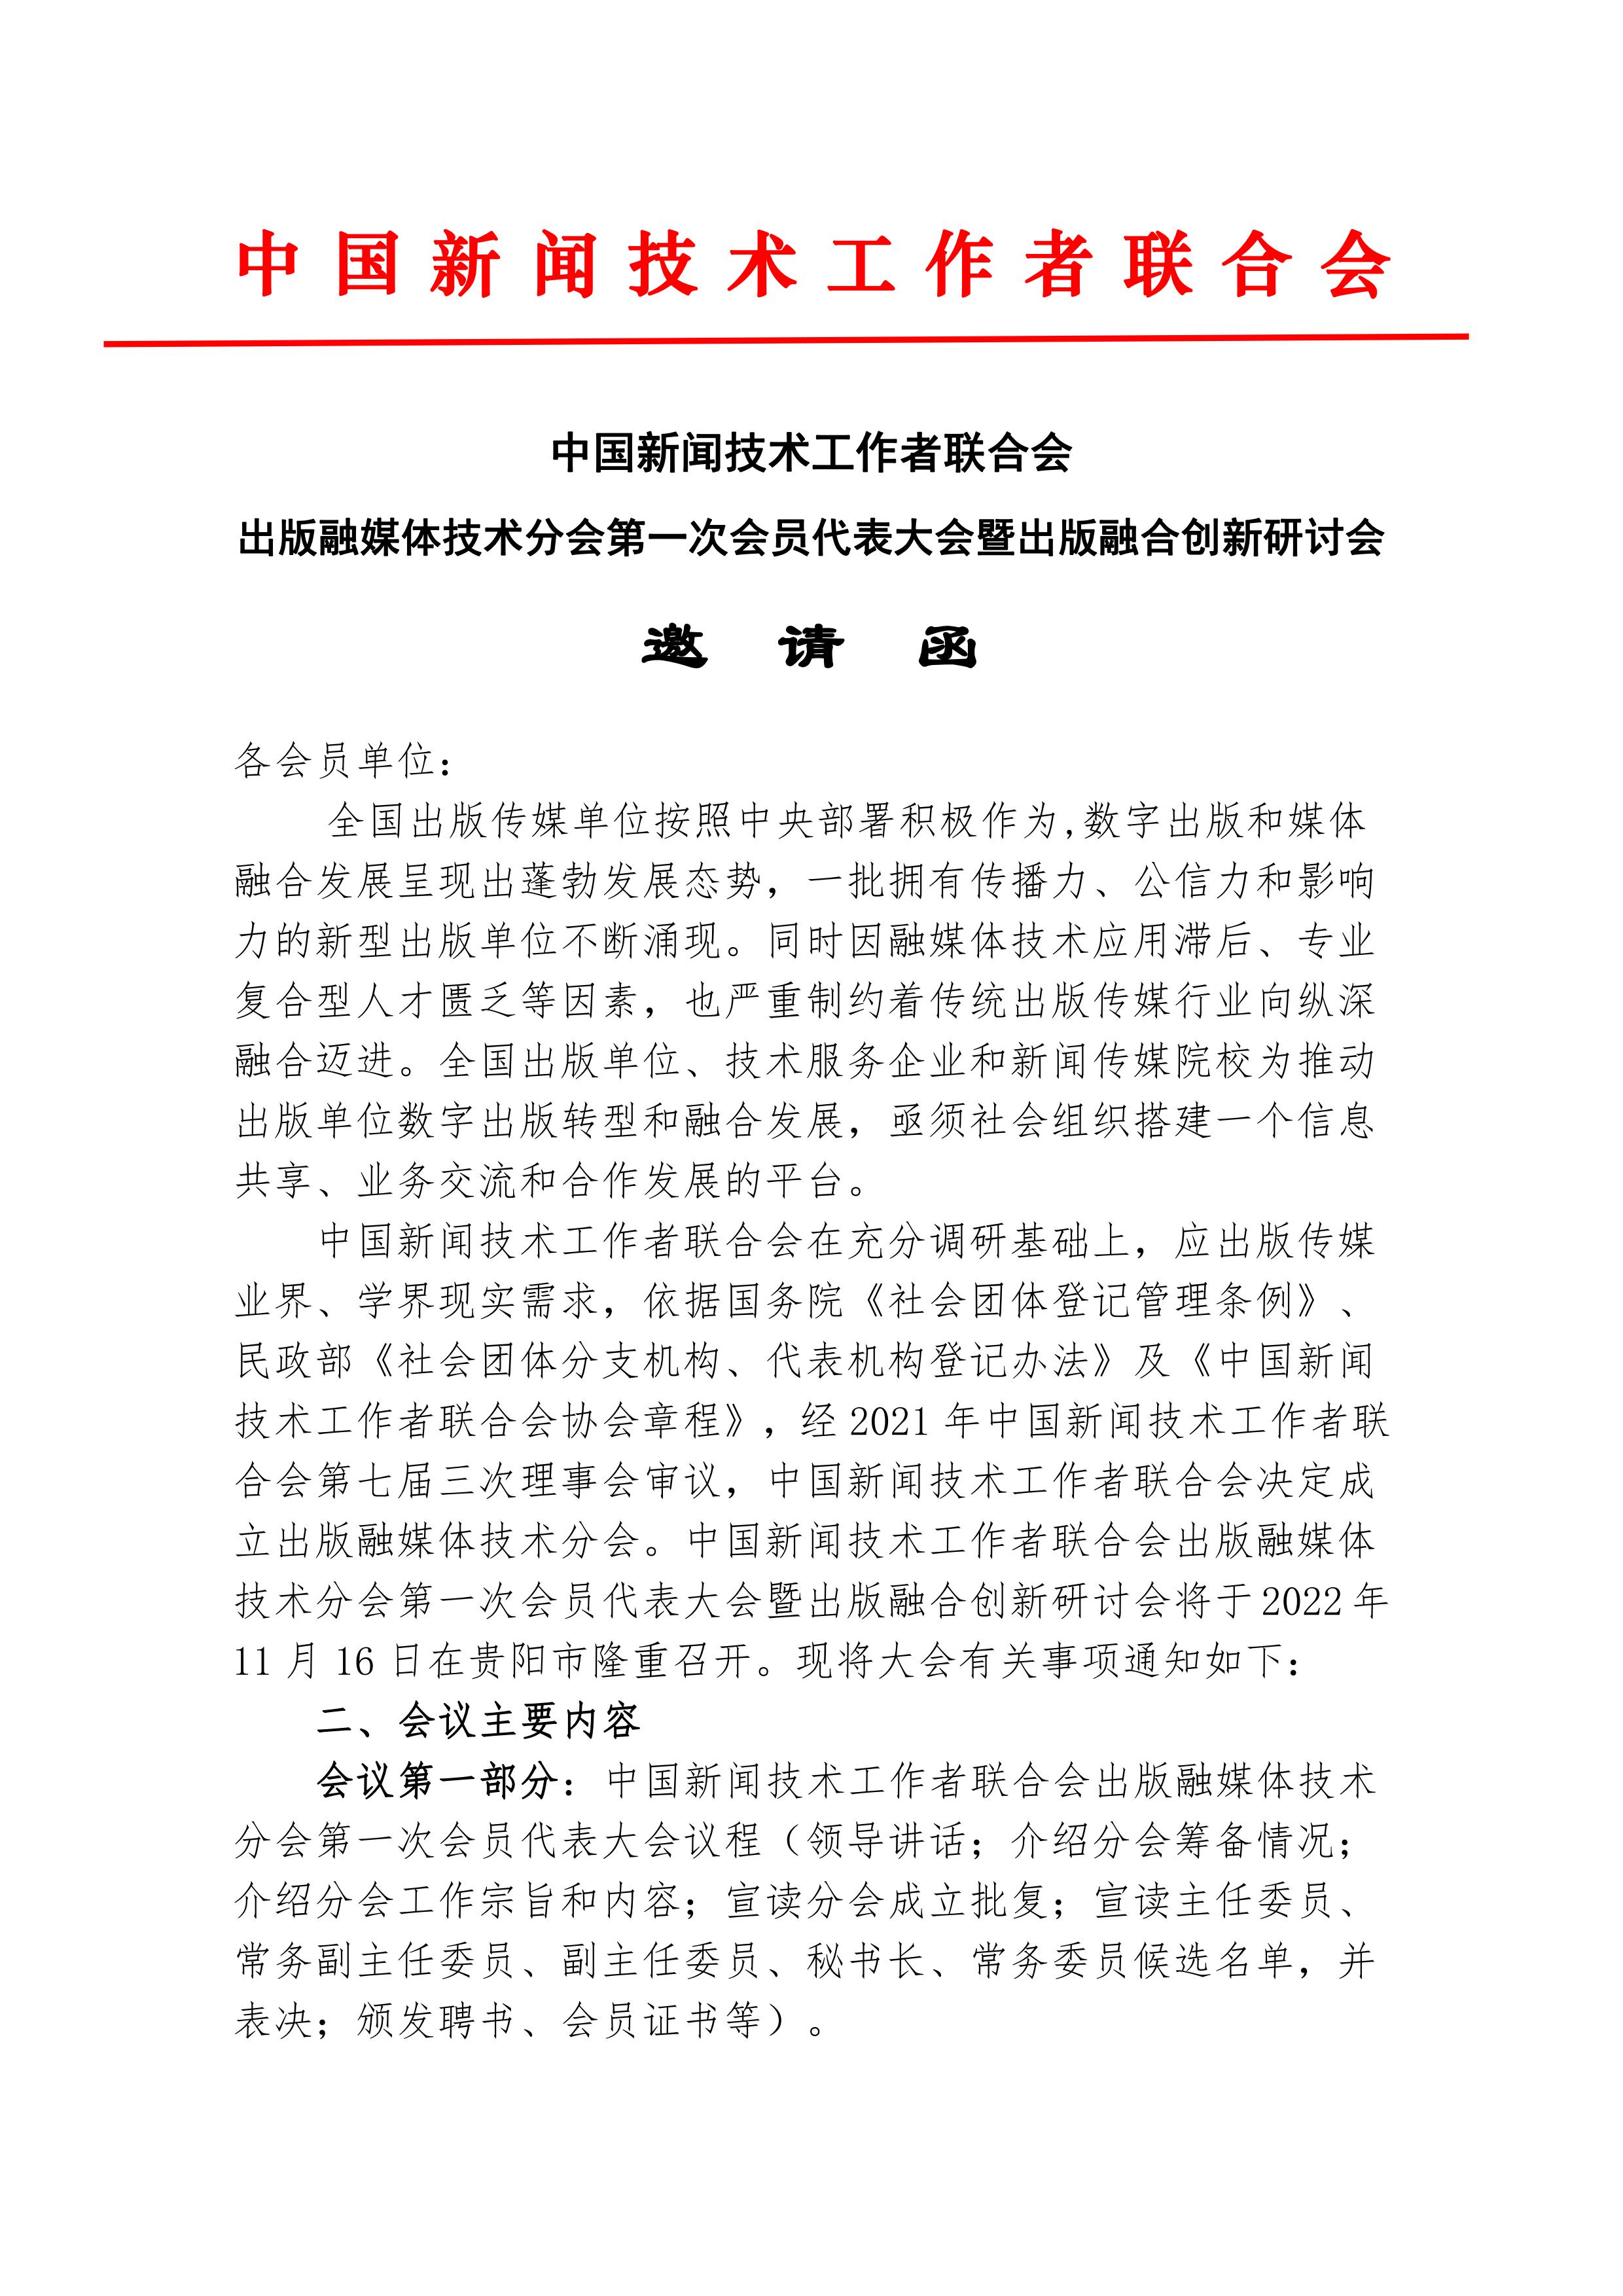 中国新闻技术工作者联合会出版融媒体技术分会第一次会员代表大会邀请函(2022.10.24)_00.jpg